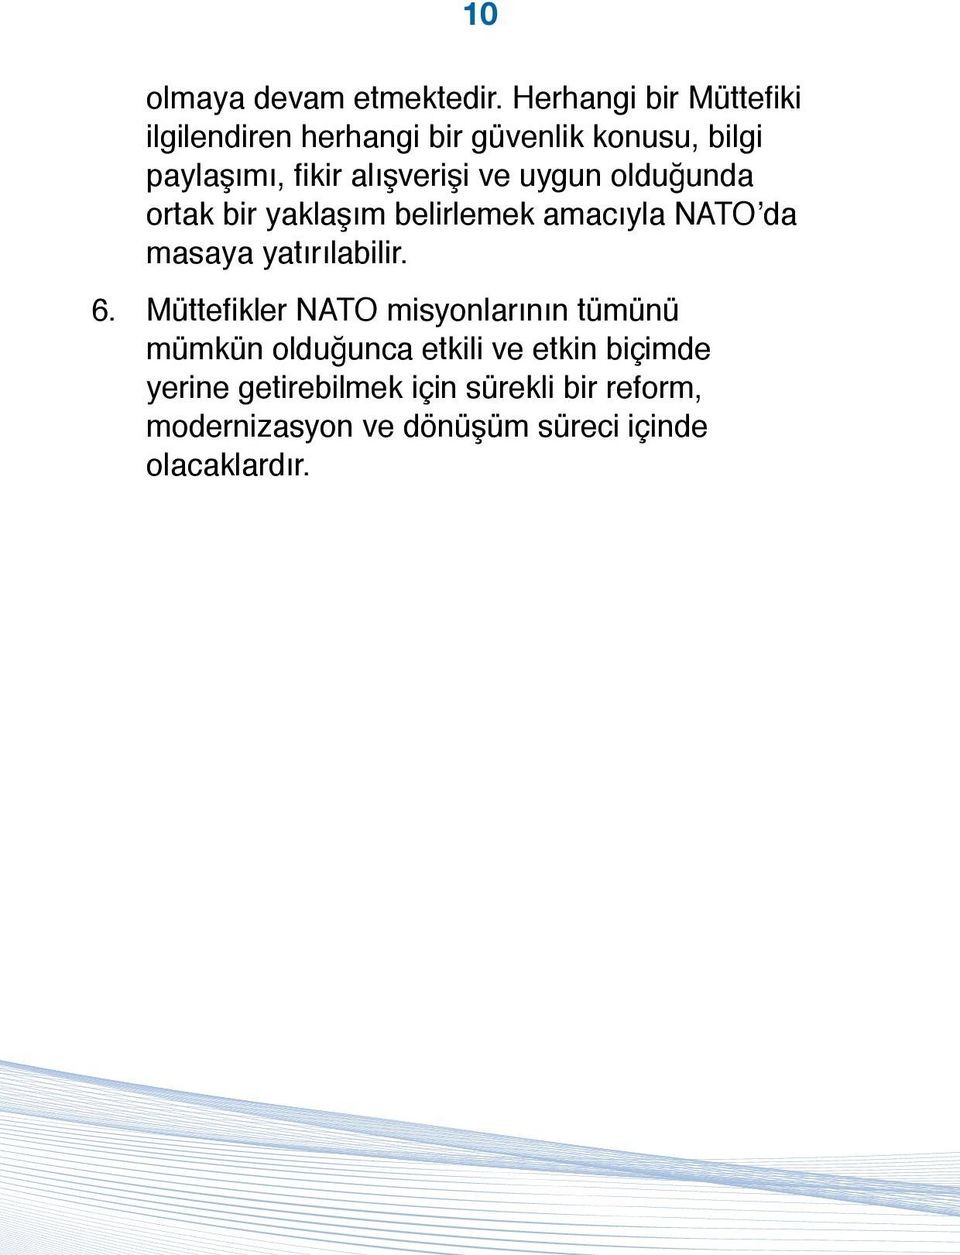 alışverişi ve uygun olduğunda ortak bir yaklaşım belirlemek amacıyla NATO da masaya yatırılabilir.